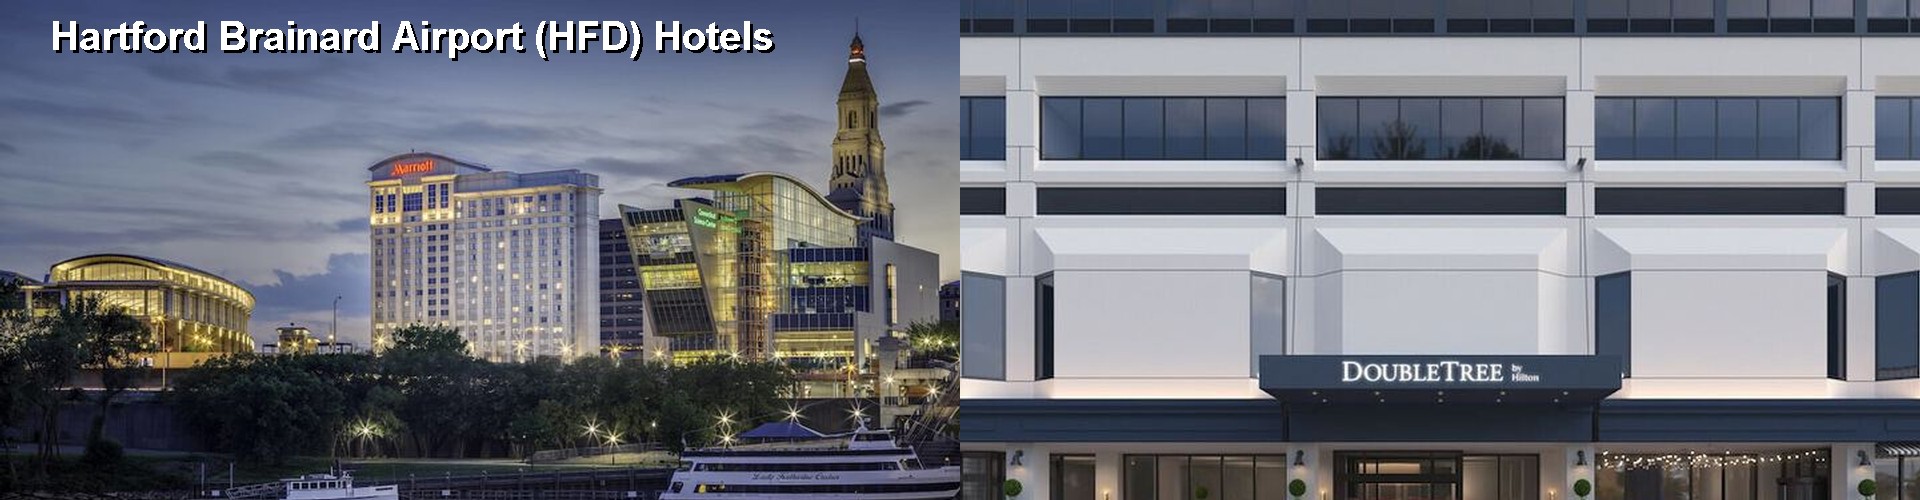 5 Best Hotels near Hartford Brainard Airport (HFD)